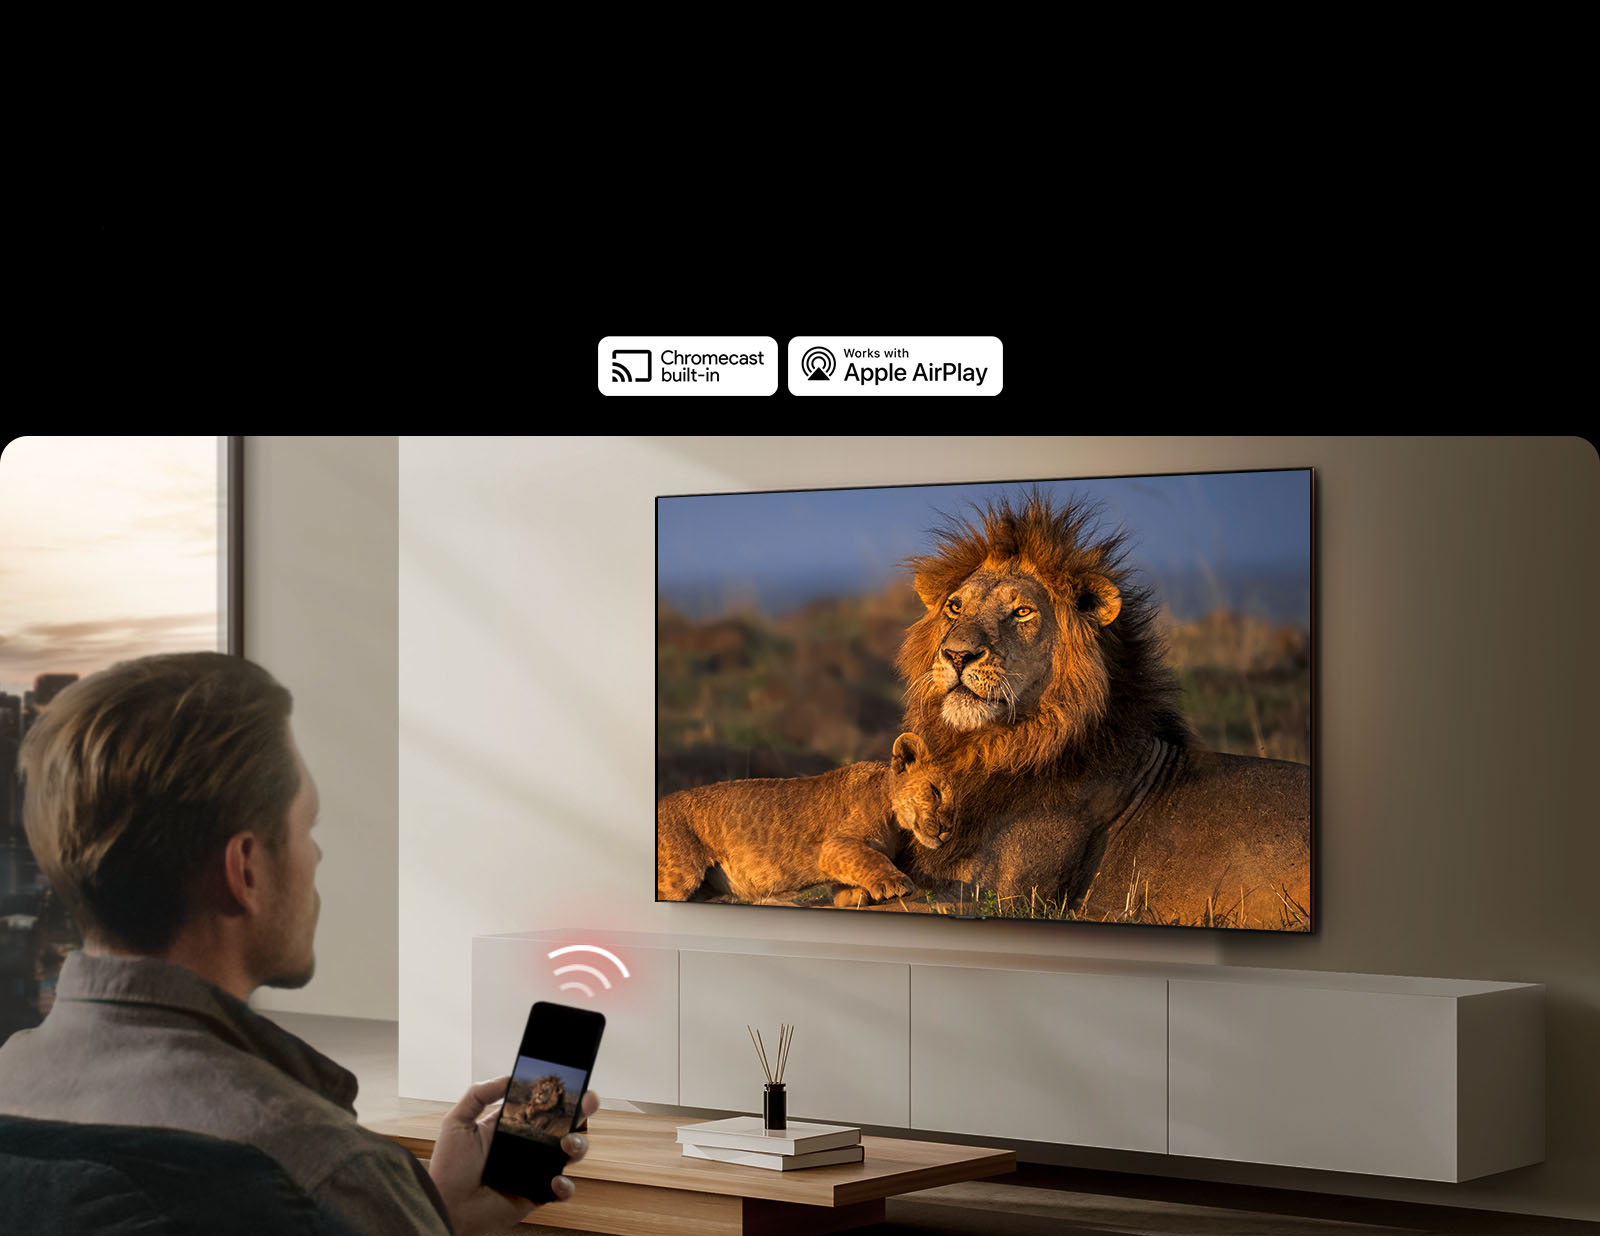 Một chiếc TV LG gắn trên tường trong phòng khách, trưng bày một con sư tử và sư tử con. Một người đàn ông ngồi ở phía trước với chiếc điện thoại thông minh trên tay hiển thị hình ảnh tương tự của những con sư tử. Hình ảnh ba thanh cong màu đỏ neon được hiển thị ngay phía trên điện thoại thông minh hướng về phía TV.